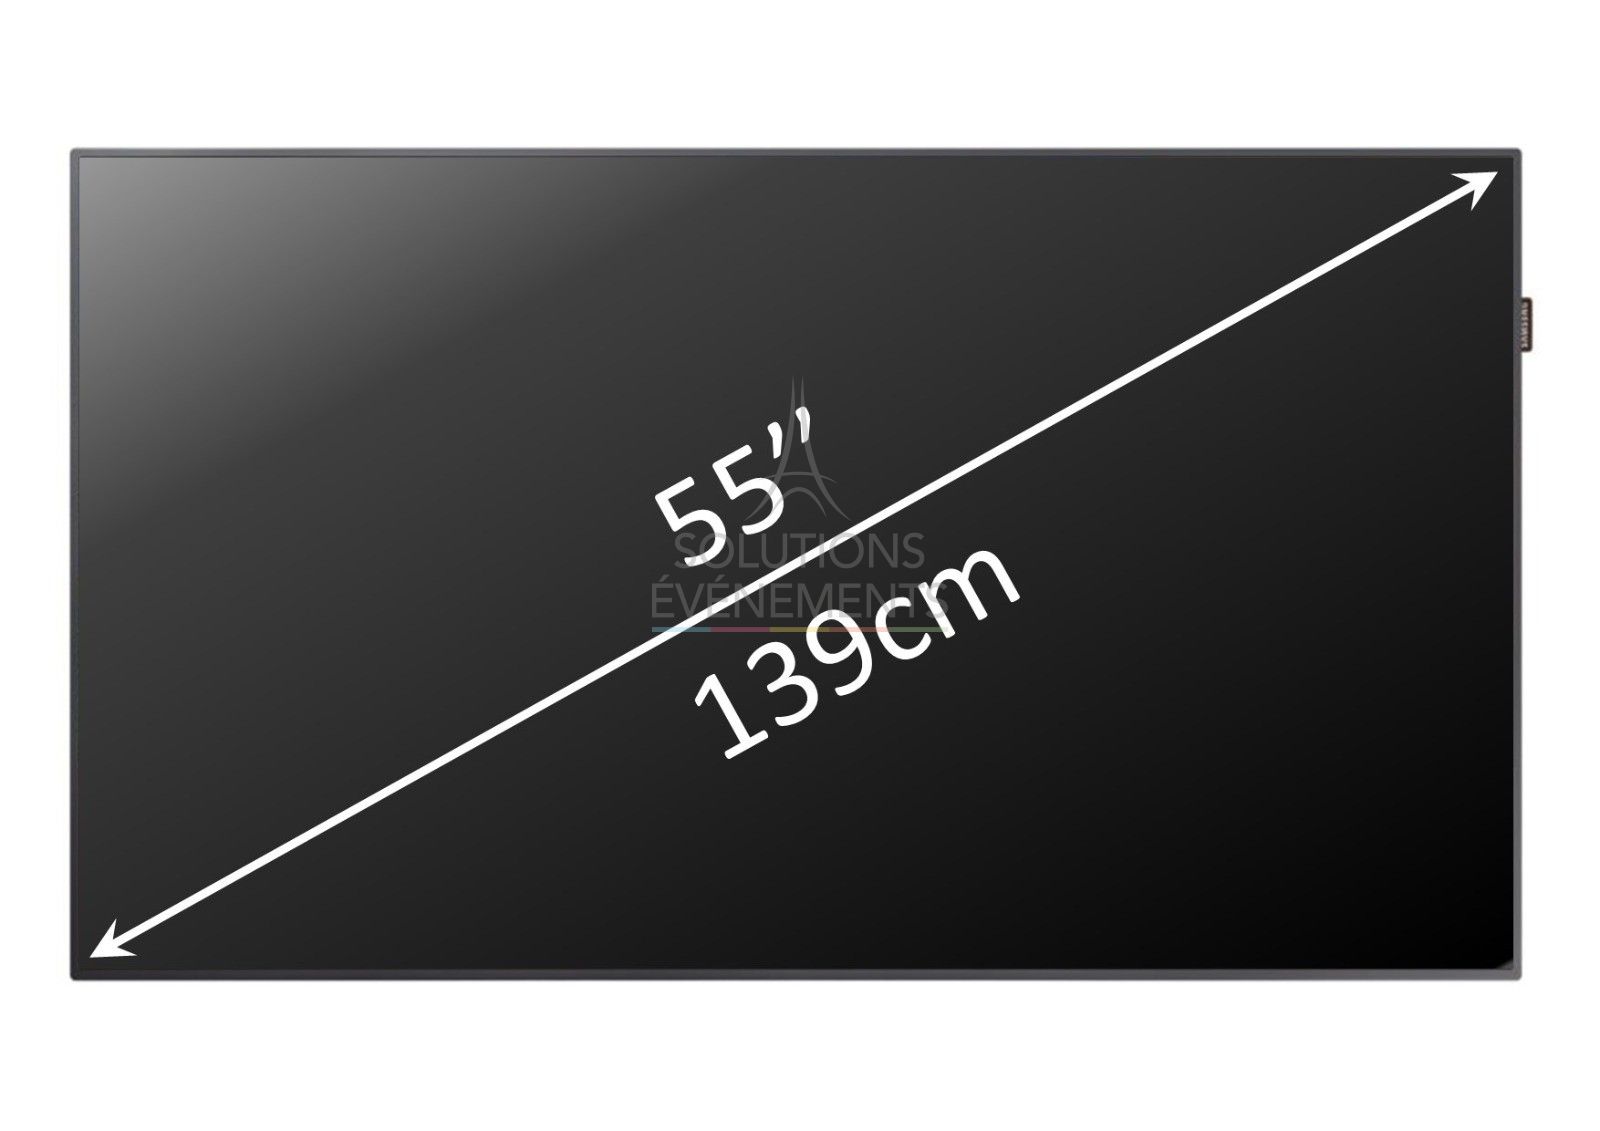 Location de télévision 4K Ultra HD de 139 cm